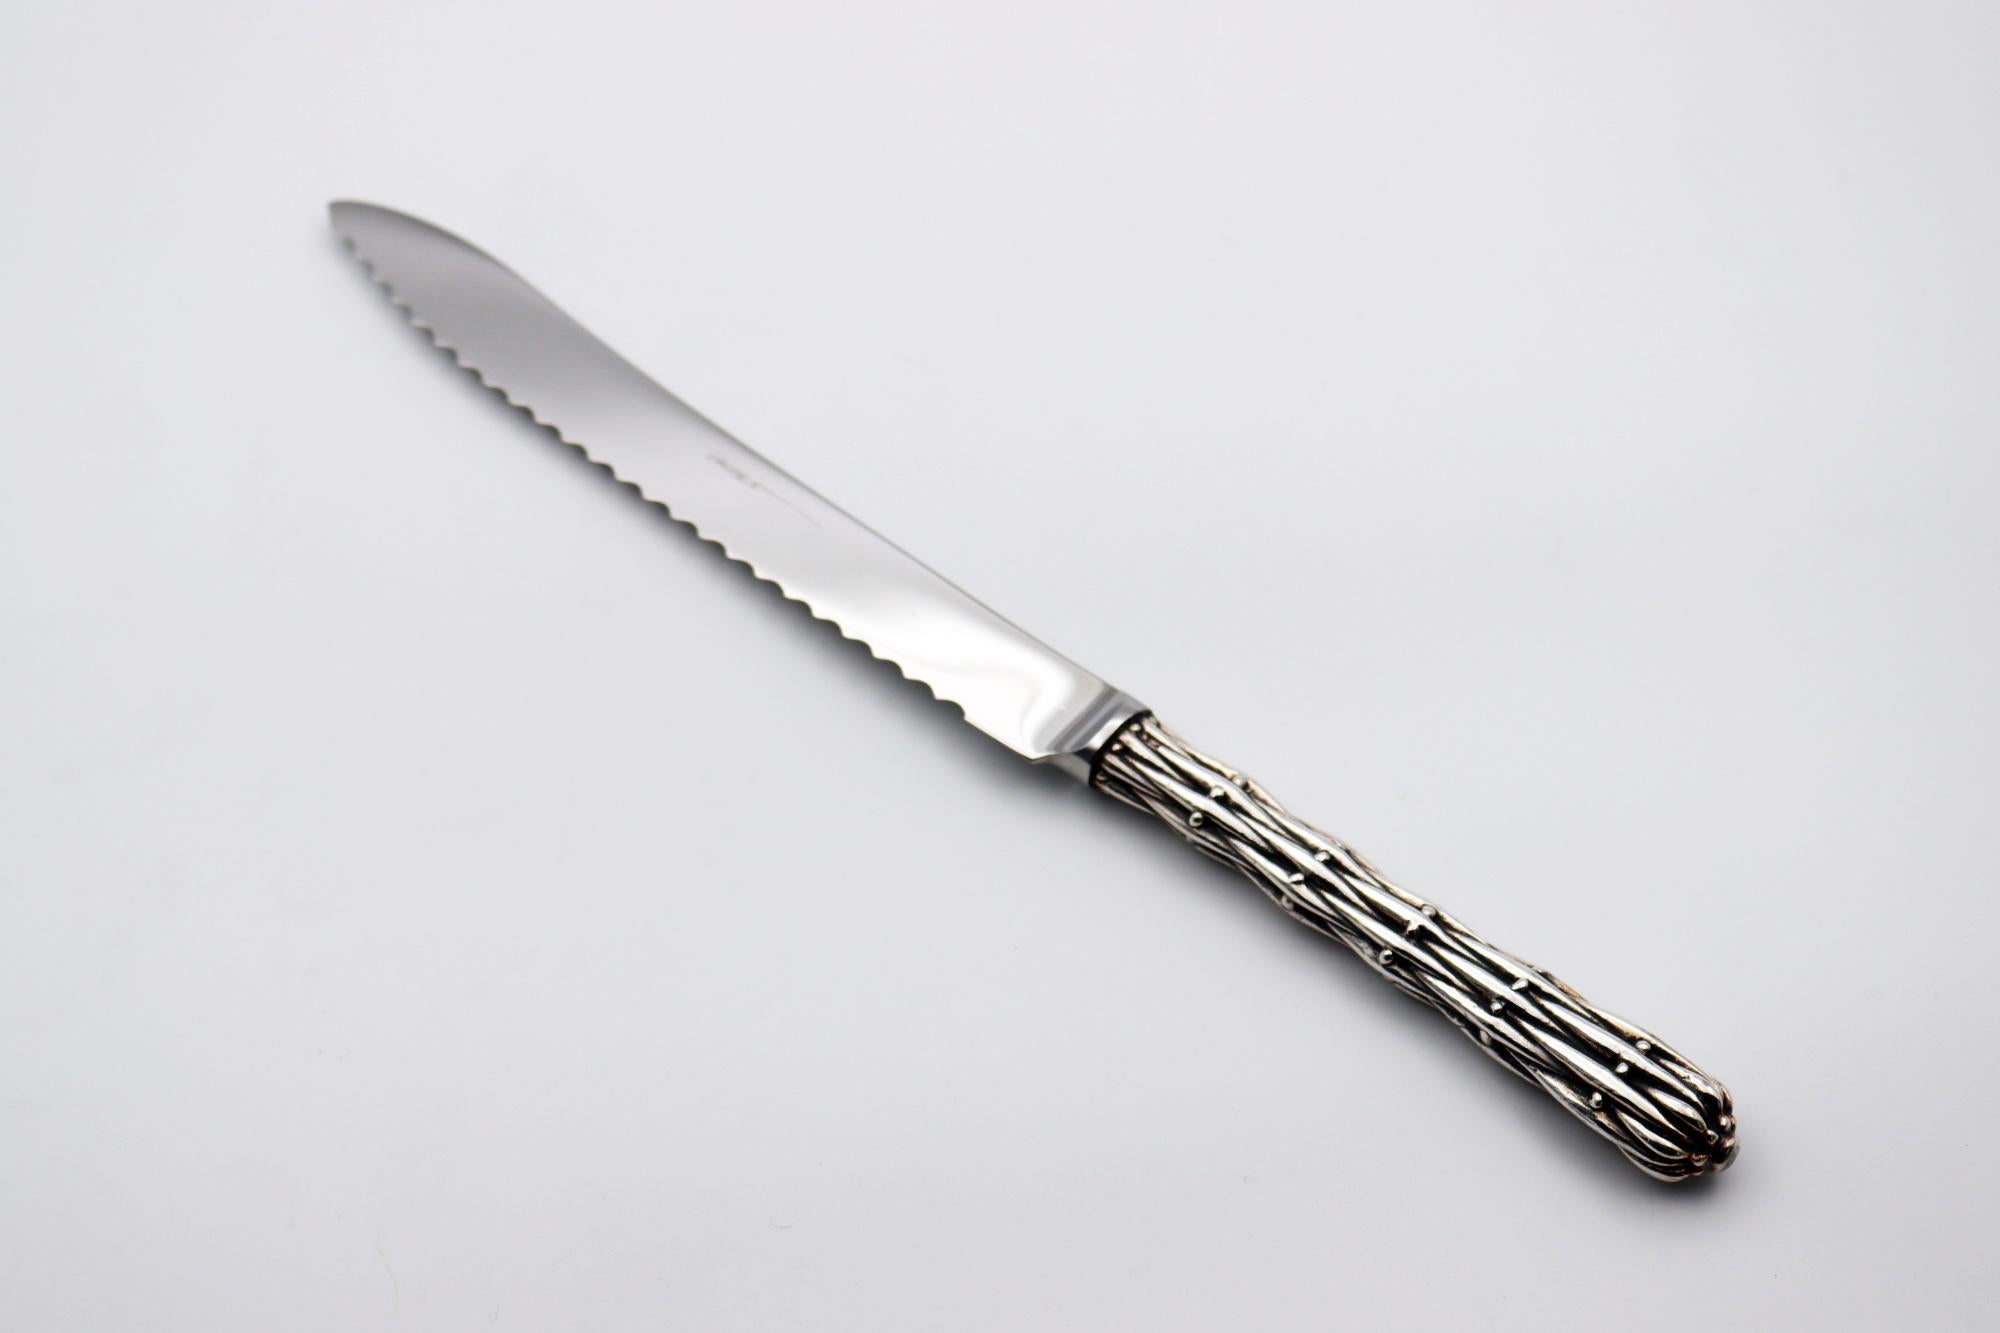 Couteau à pain en bronze argenté 35/42 microns 
Longueur : 348 mm, poids : 200 gr

Ce couteau est l'œuvre du designer français Richard Lauret.
Ces pièces sont uniques OU réalisées sur commande.

Les produits peuvent être personnalisés par une